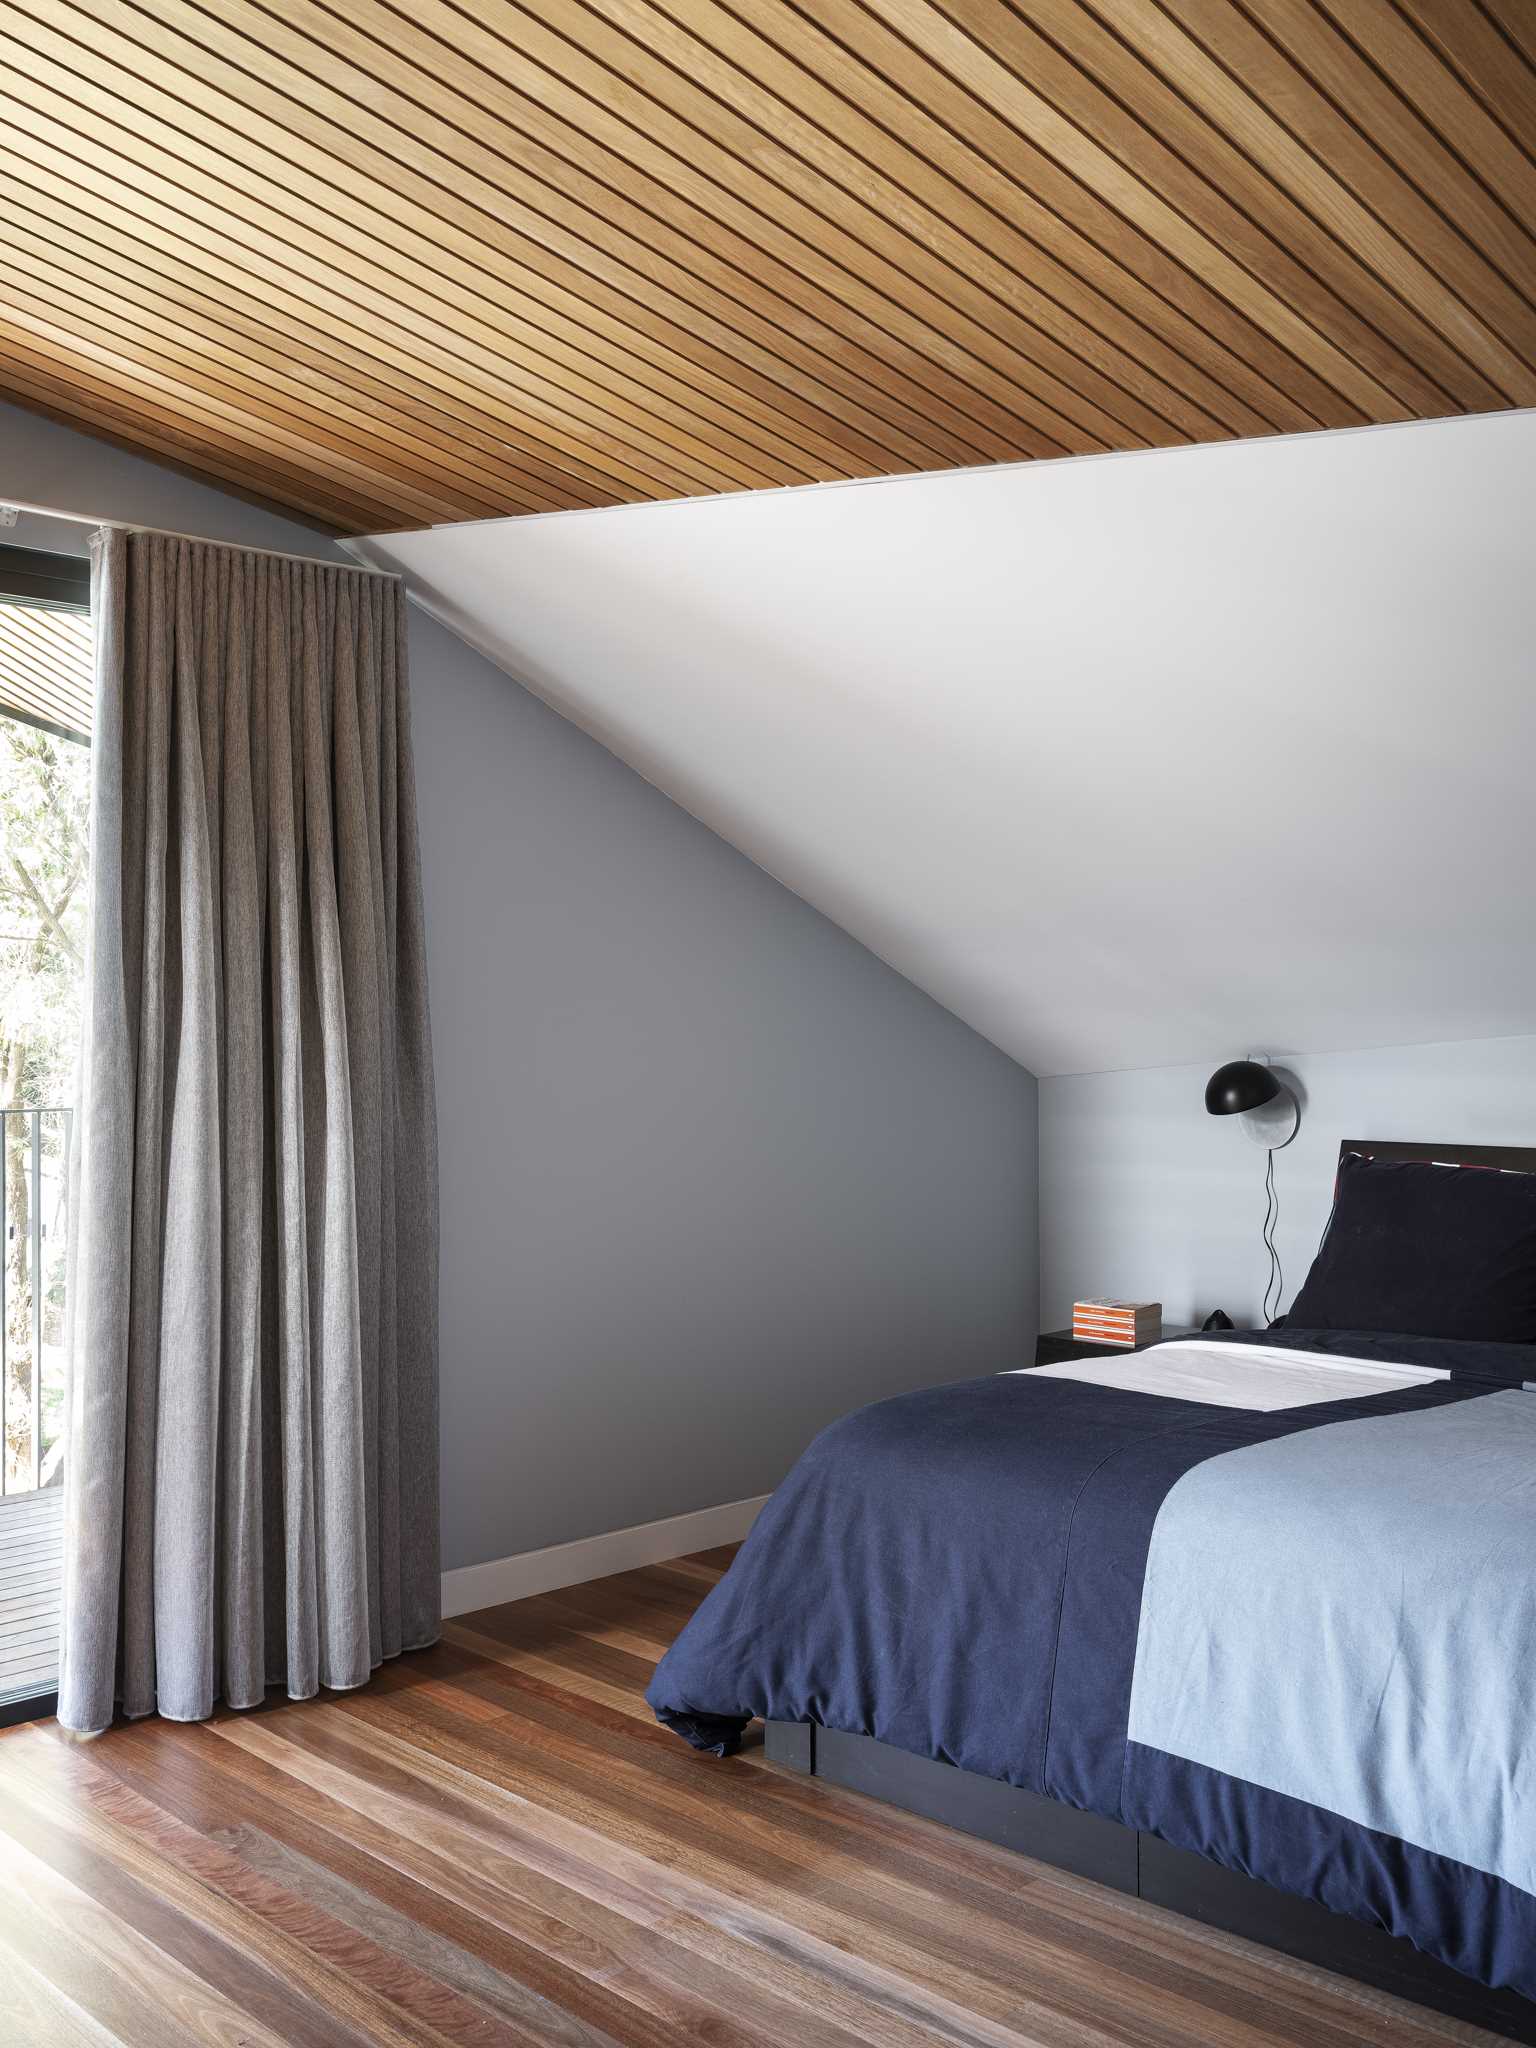 در این اتاق خواب مدرن، یک سقف چوبی و یک کف چوبی وجود دارد، در حالی که یک دیوار برجسته خا،تری یک در شیشه ای کشویی را احاطه کرده است که به بالکن باز می شود.